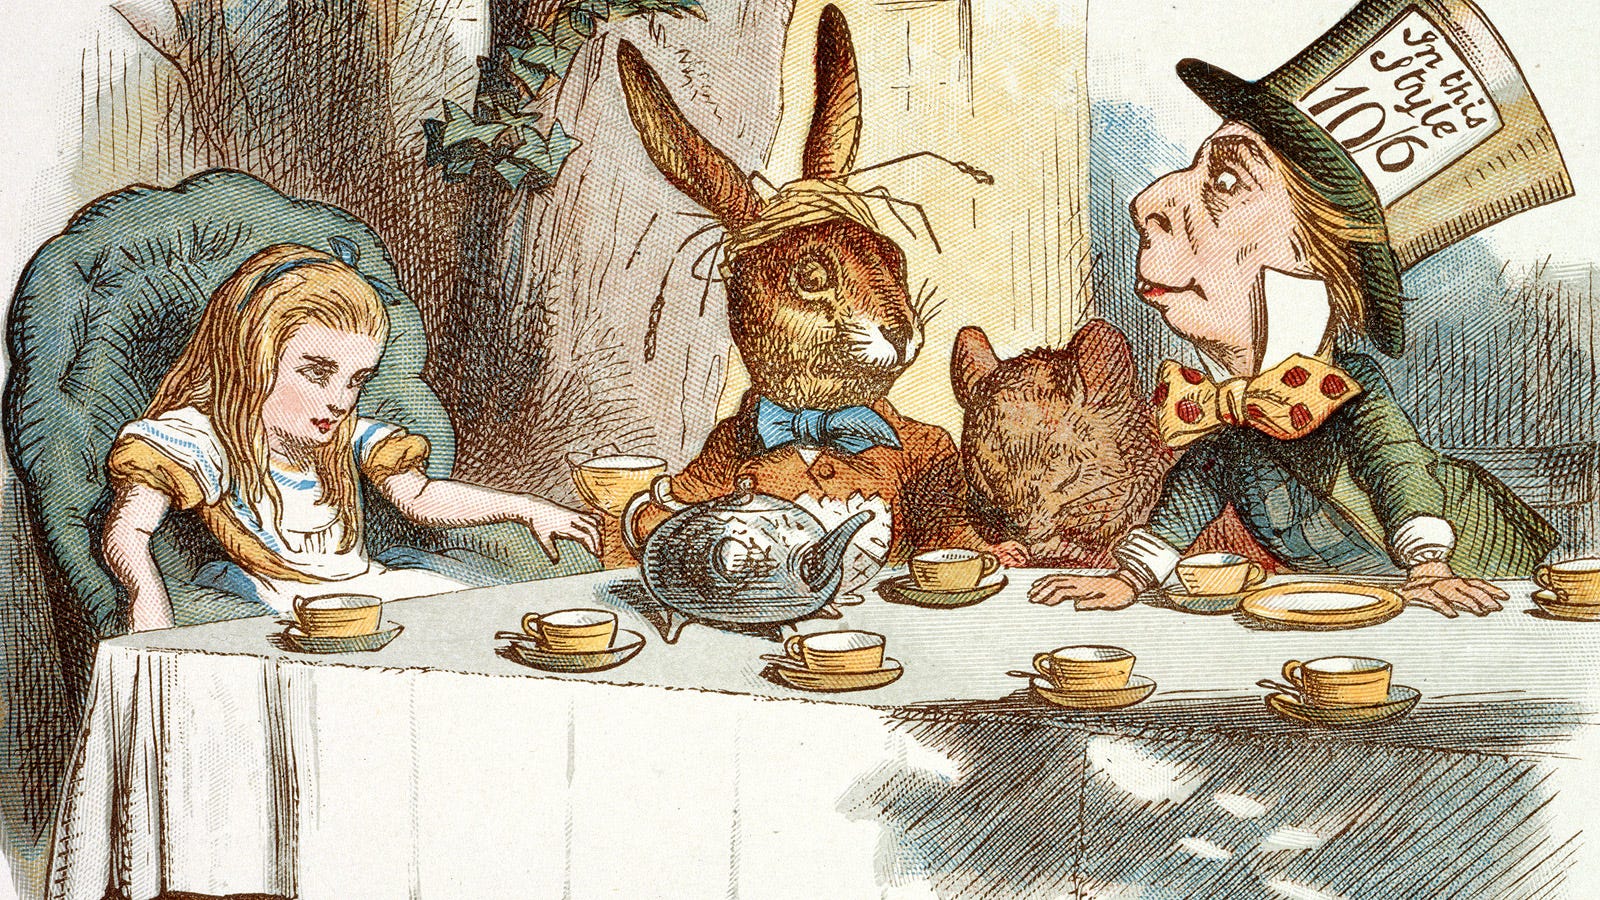 World of Reading: Alice's Wonderland Bakery: Wonderful Wonderland